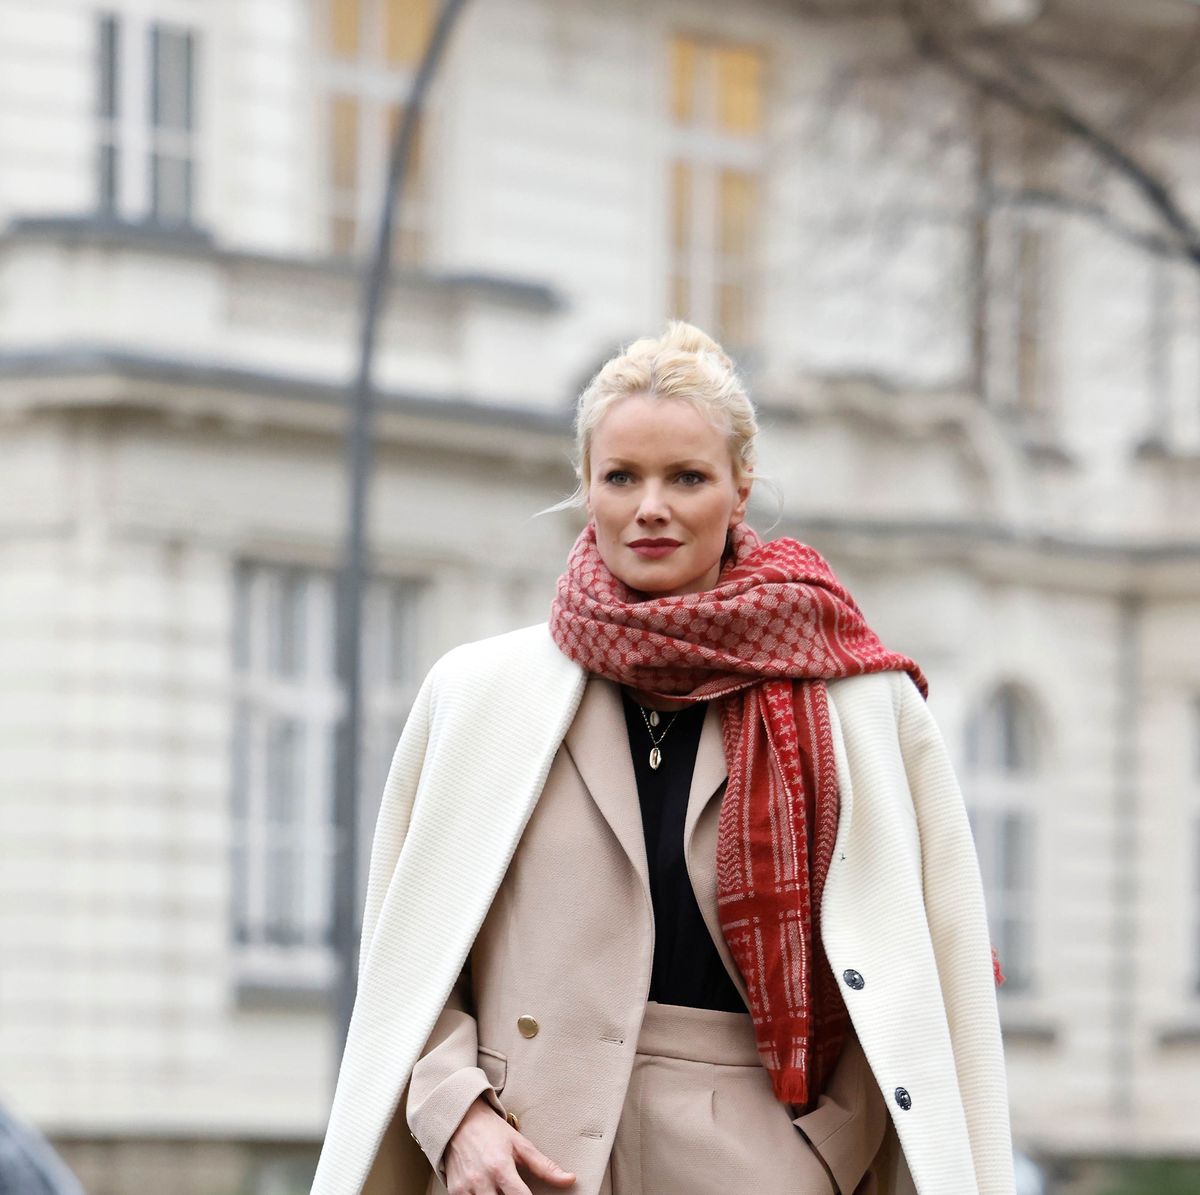 Cómo lucir un abrigo blanco: prenda más del invierno